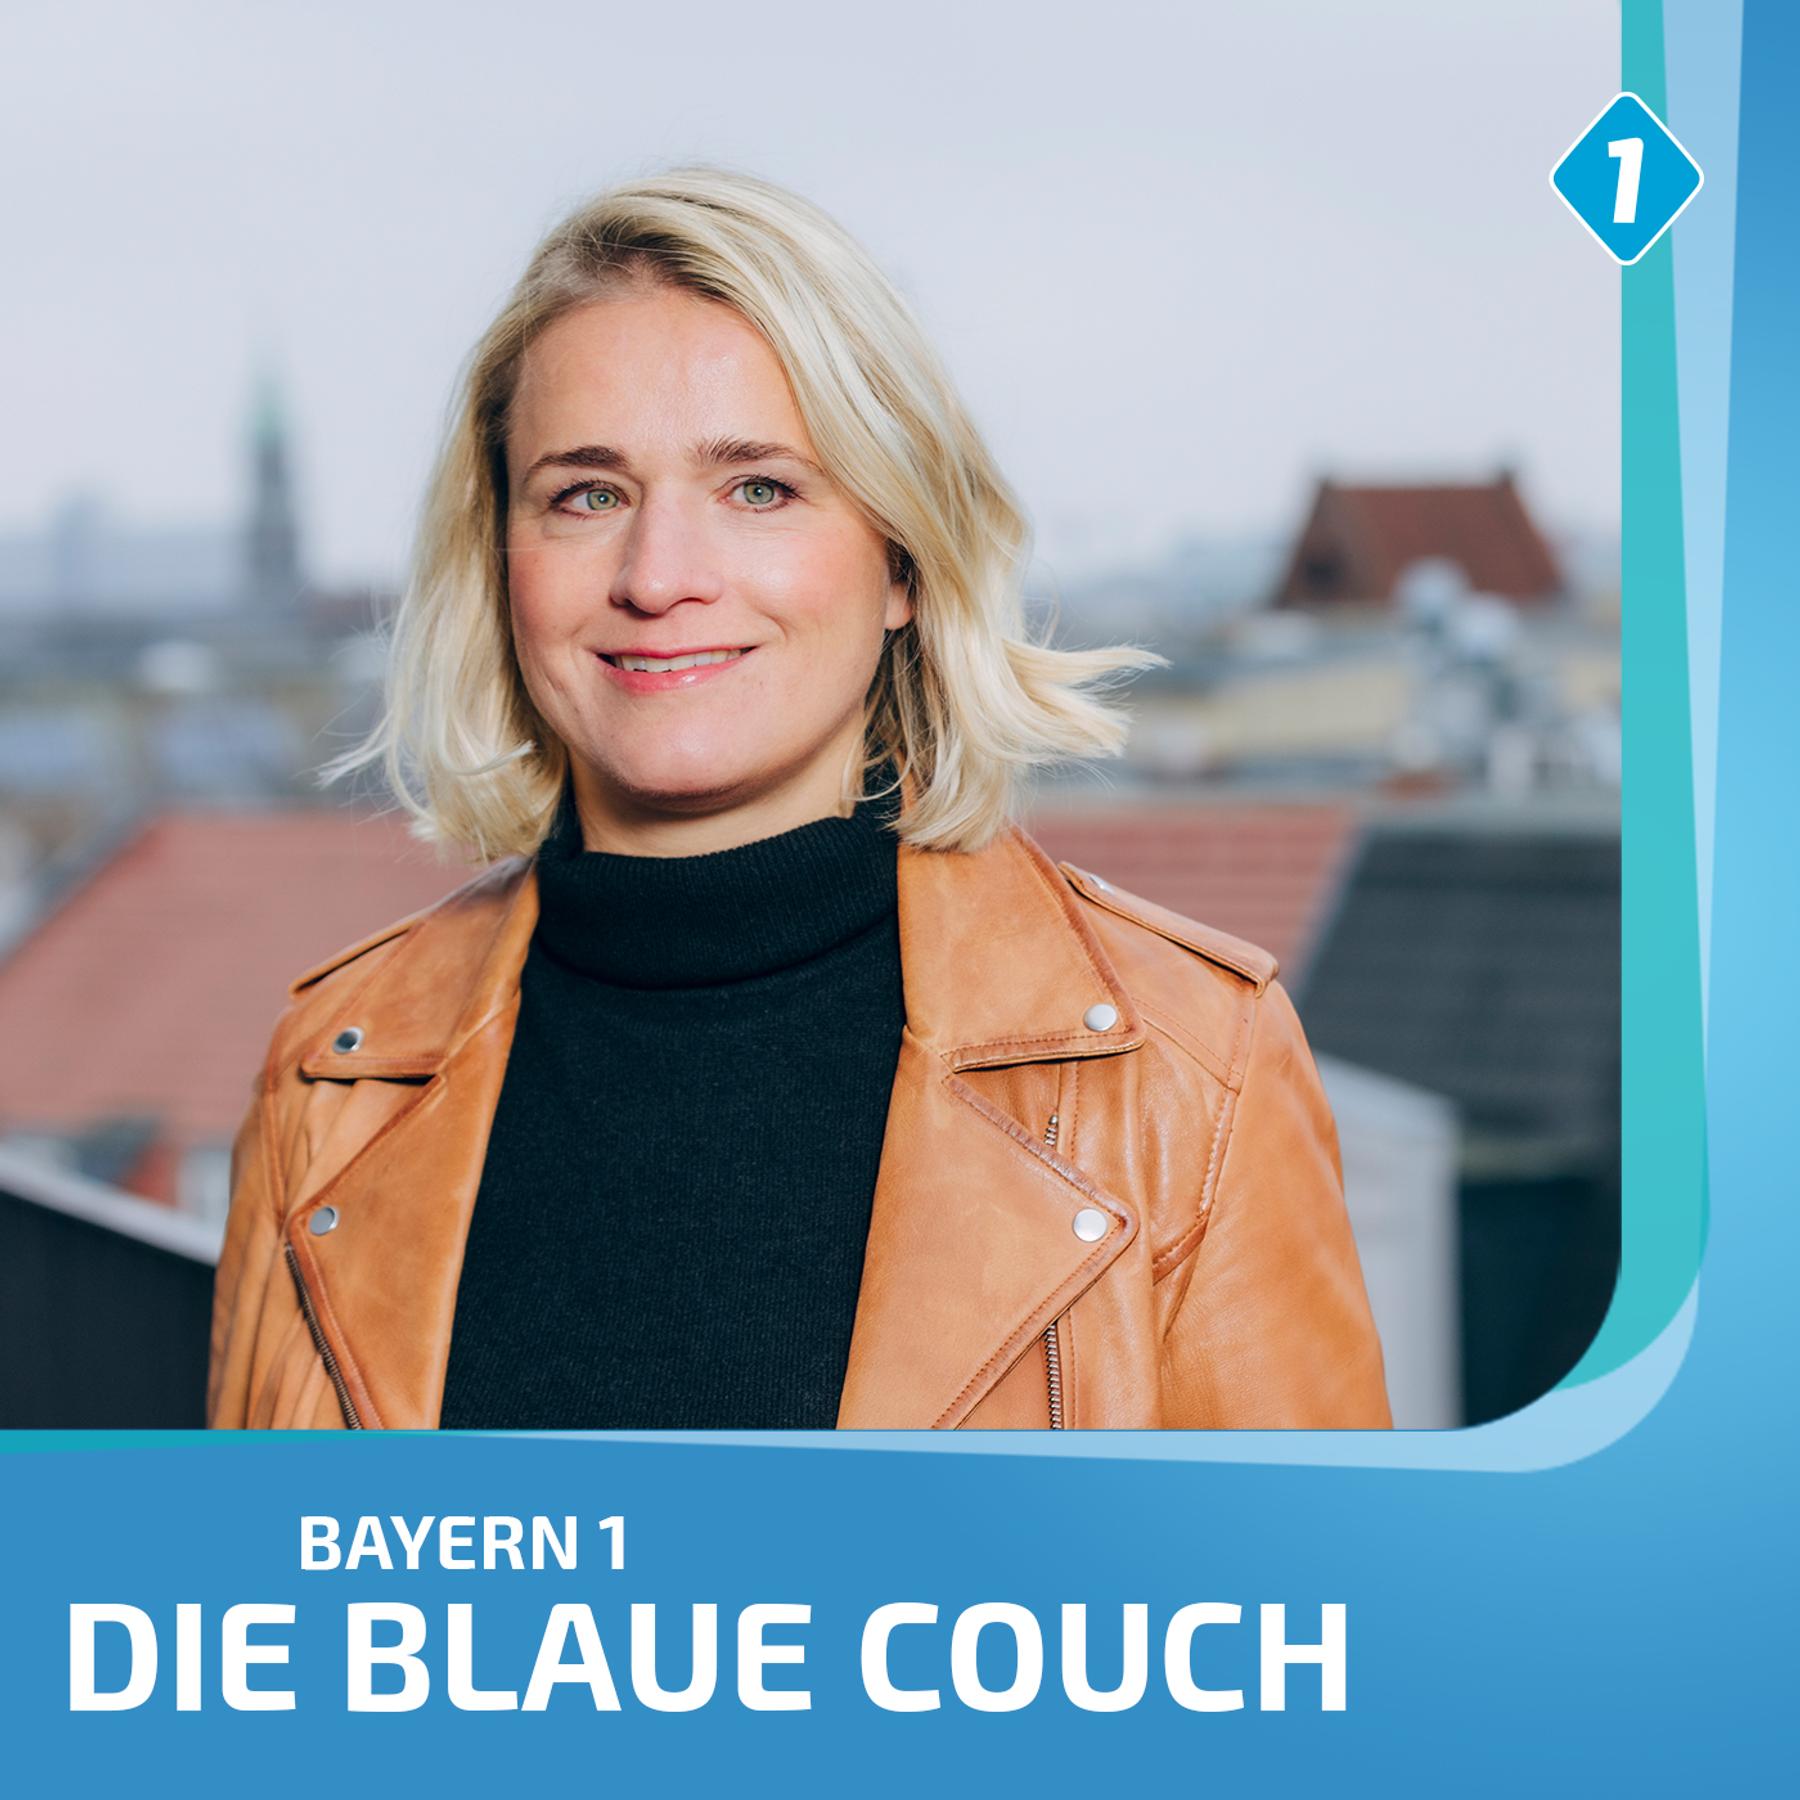 Karoline Herfurth, Schauspielerin und Regisseurin, über “Einfach mal was  Schönes” - Blaue Couch